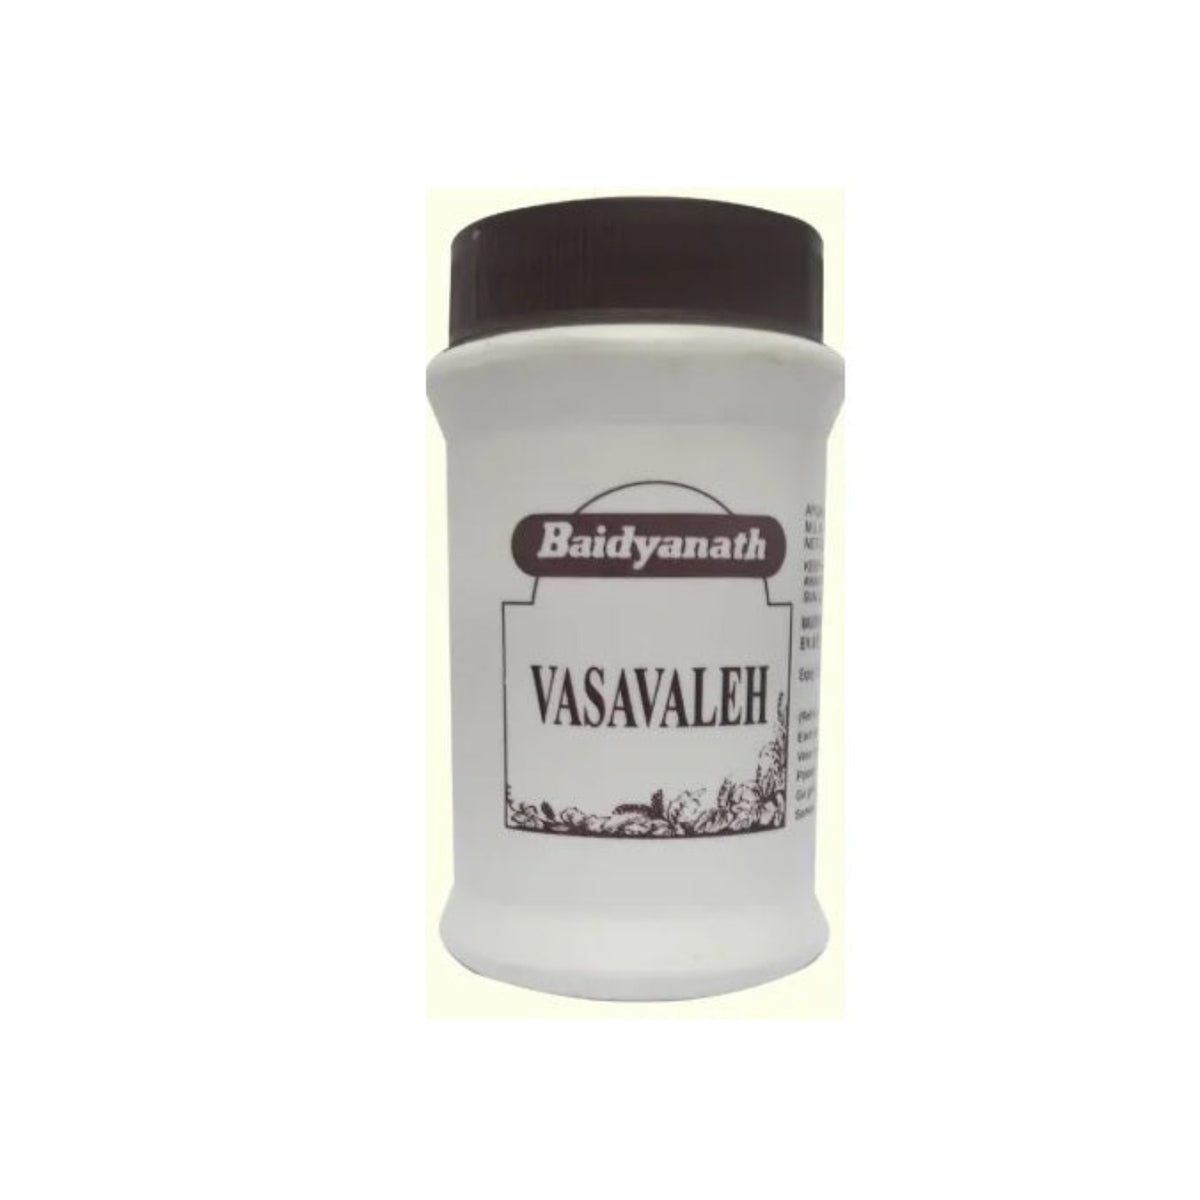 Baidhyanath Ayurvedic Vasavaleha Granules Use Ful In Respiratory Wellness Avalehe 100G